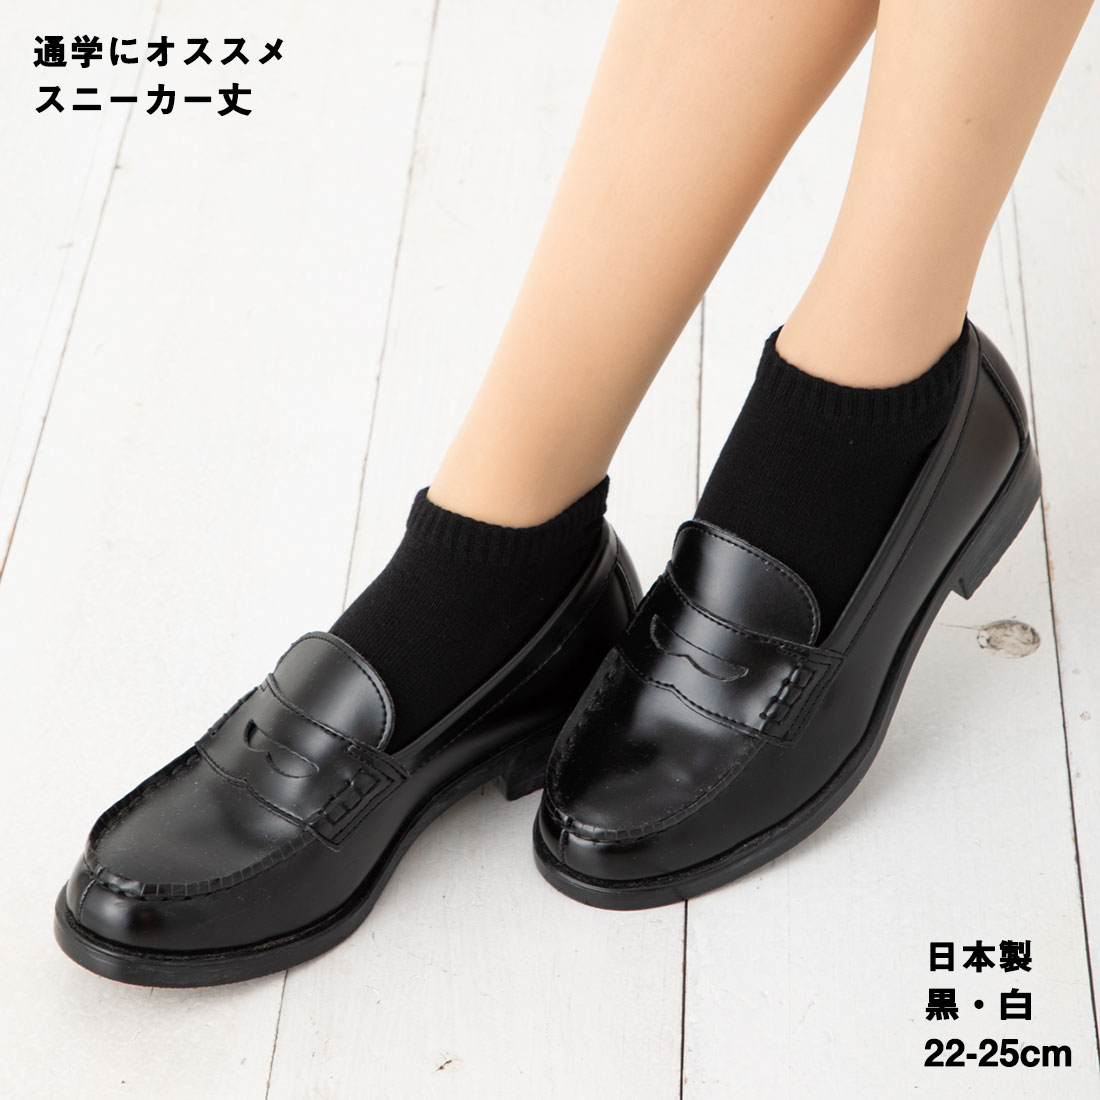 【通学にオススメ】スニーカー丈 無地ソックス 黒・白 22-25cm 日本製 スクール レディース 靴下